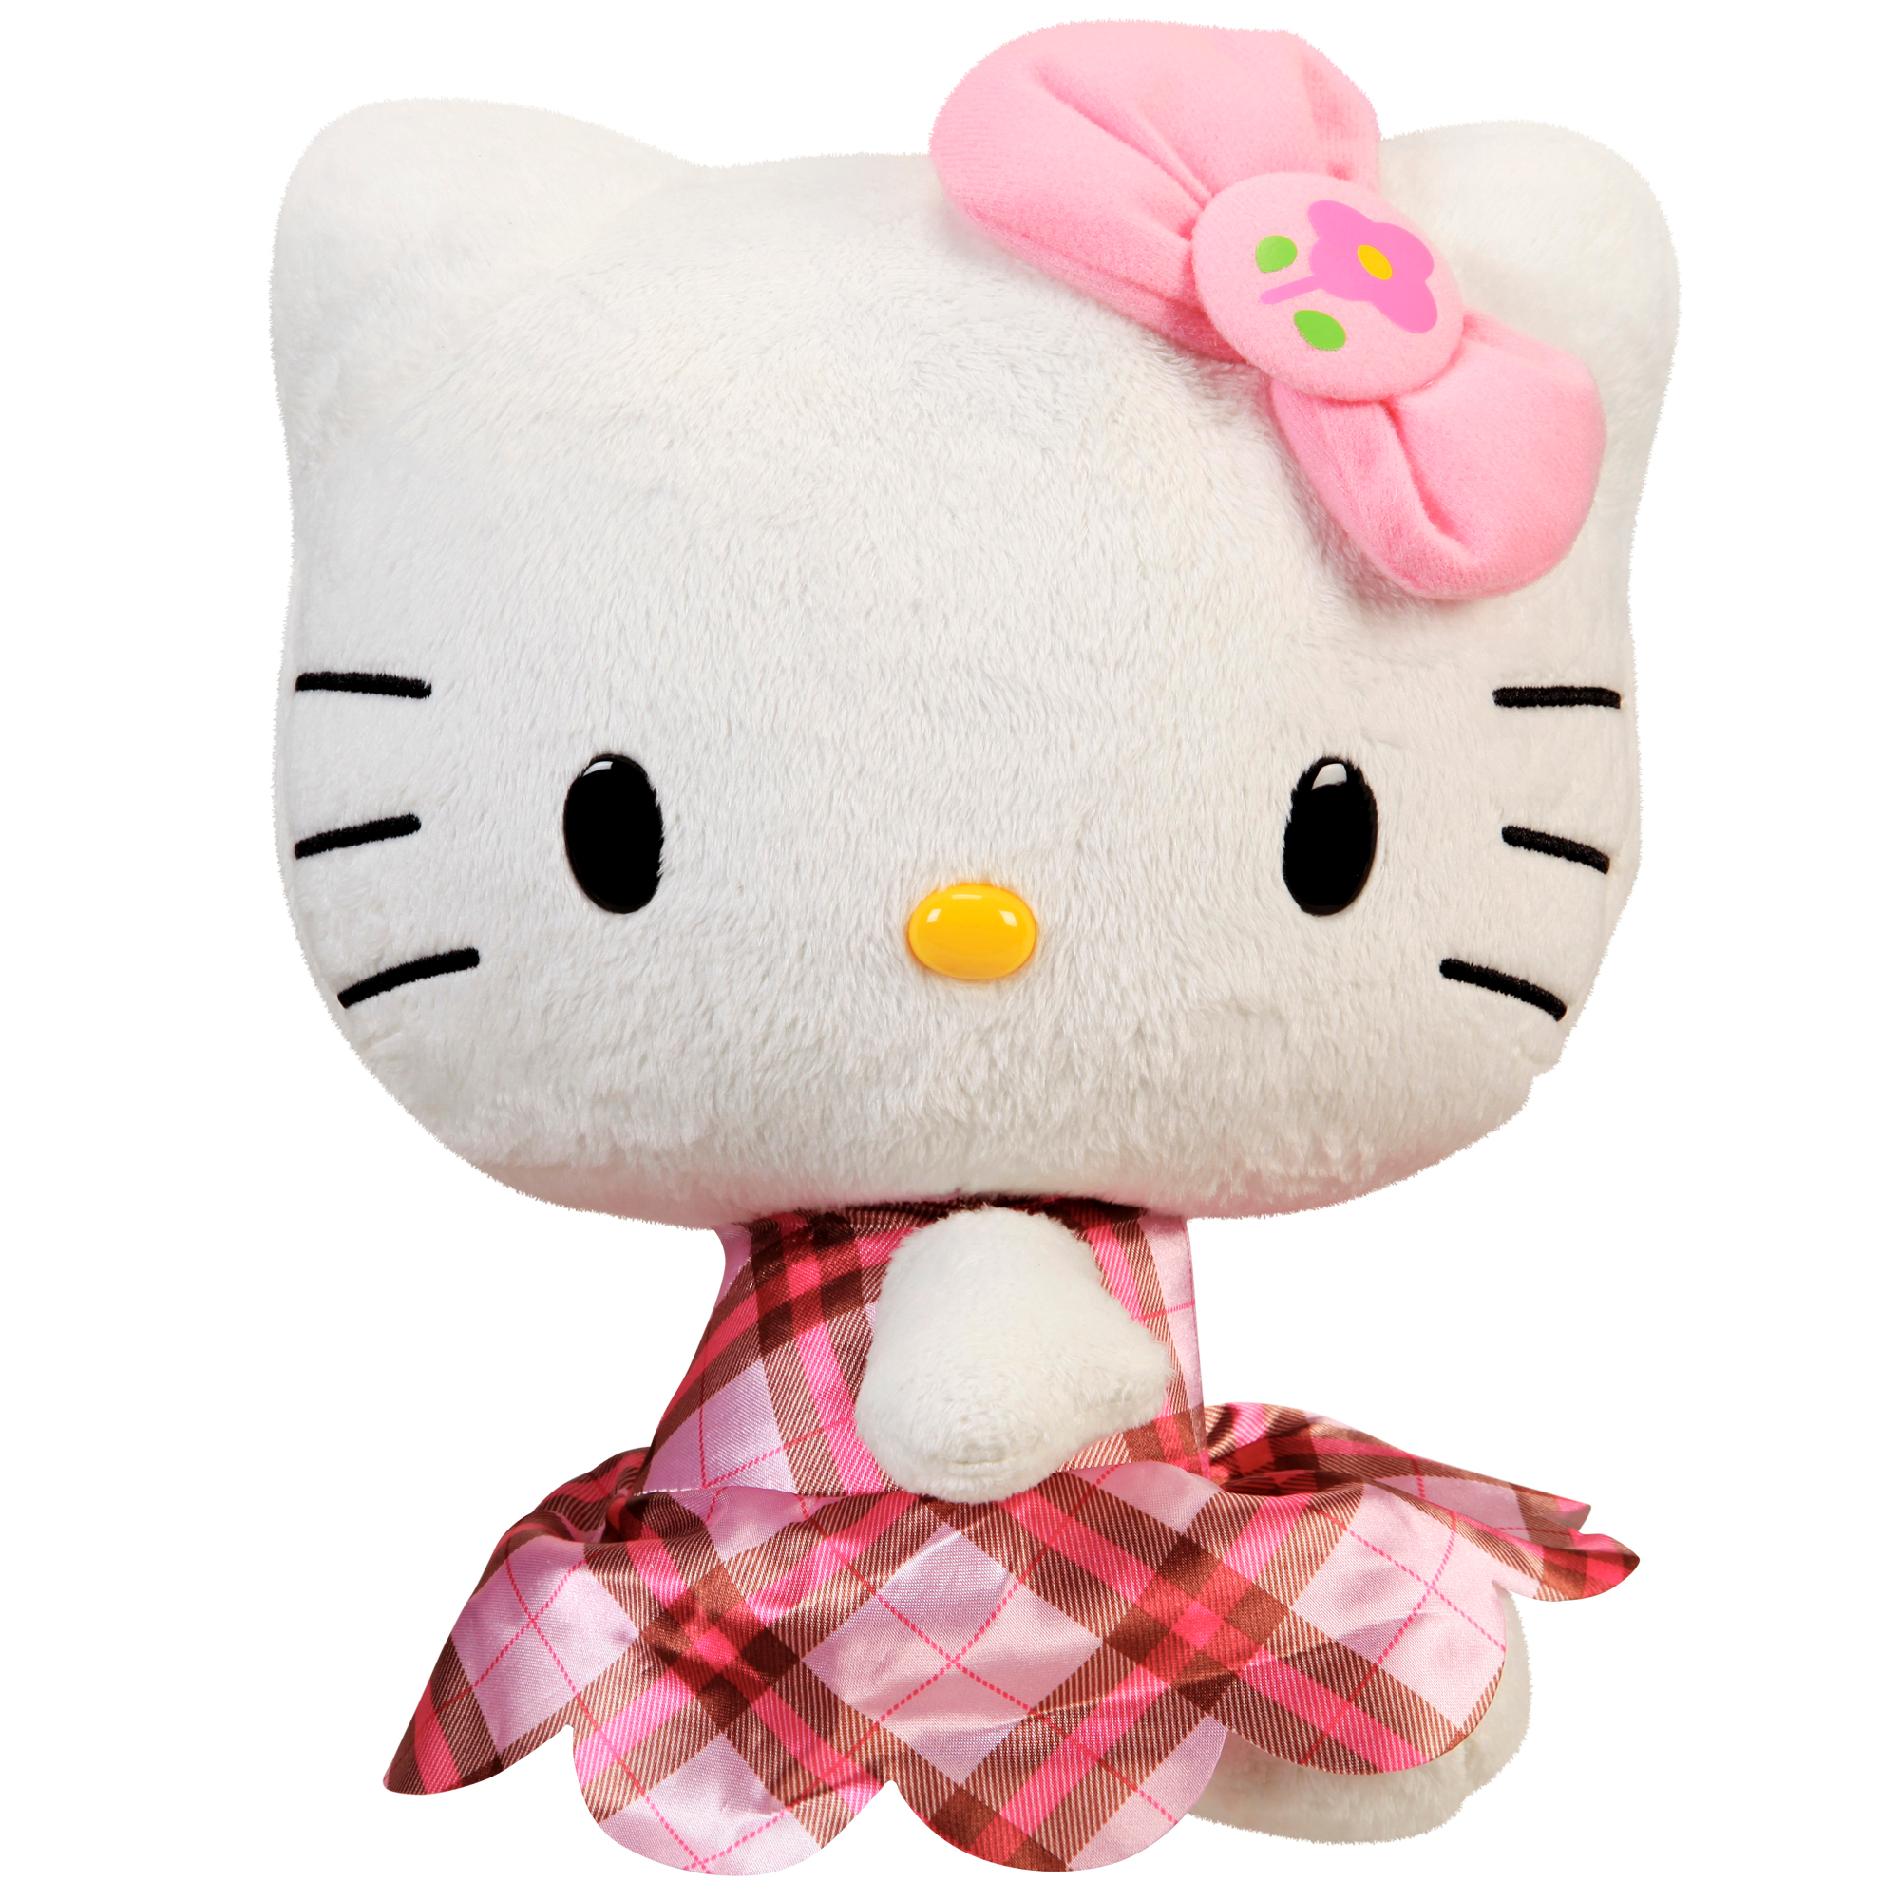 HELLO KITTY WORLD LARGE Hello Kitty PLUSH